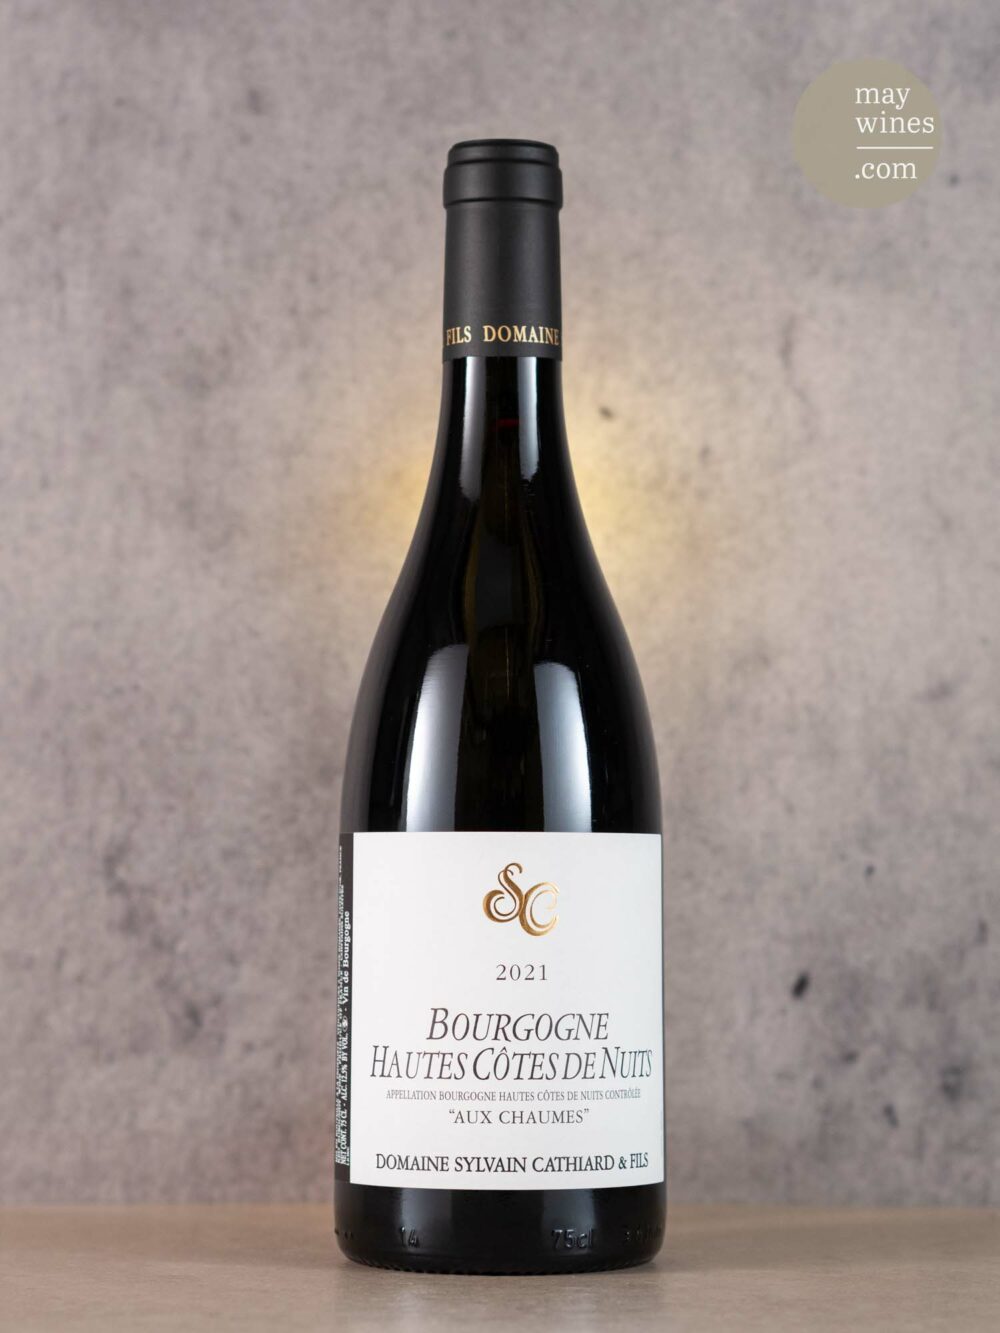 May Wines – Rotwein – 2021 Hautes Côtes de Nuits 'Aux Chaumes' Bourgogne - Domaine Sylvain Cathiard et Fils